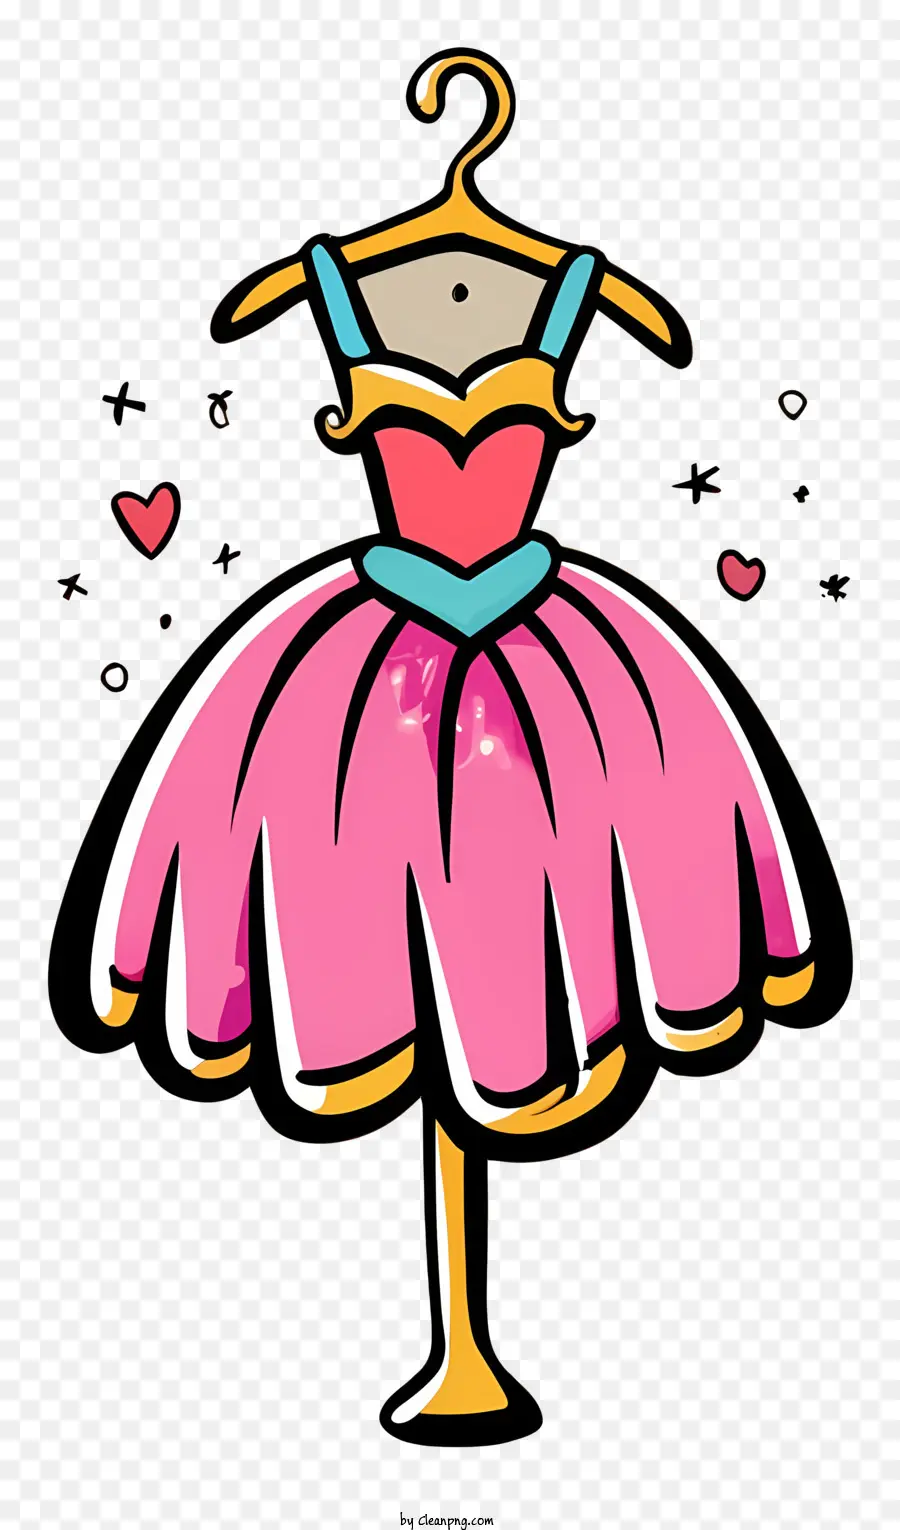 Trang phục màu hồng trái tim trên trang phục váy ballerina váy cổ áo cổ áo màu xanh - Váy ballerina màu hồng với điểm nhấn màu xanh trên giá đỡ